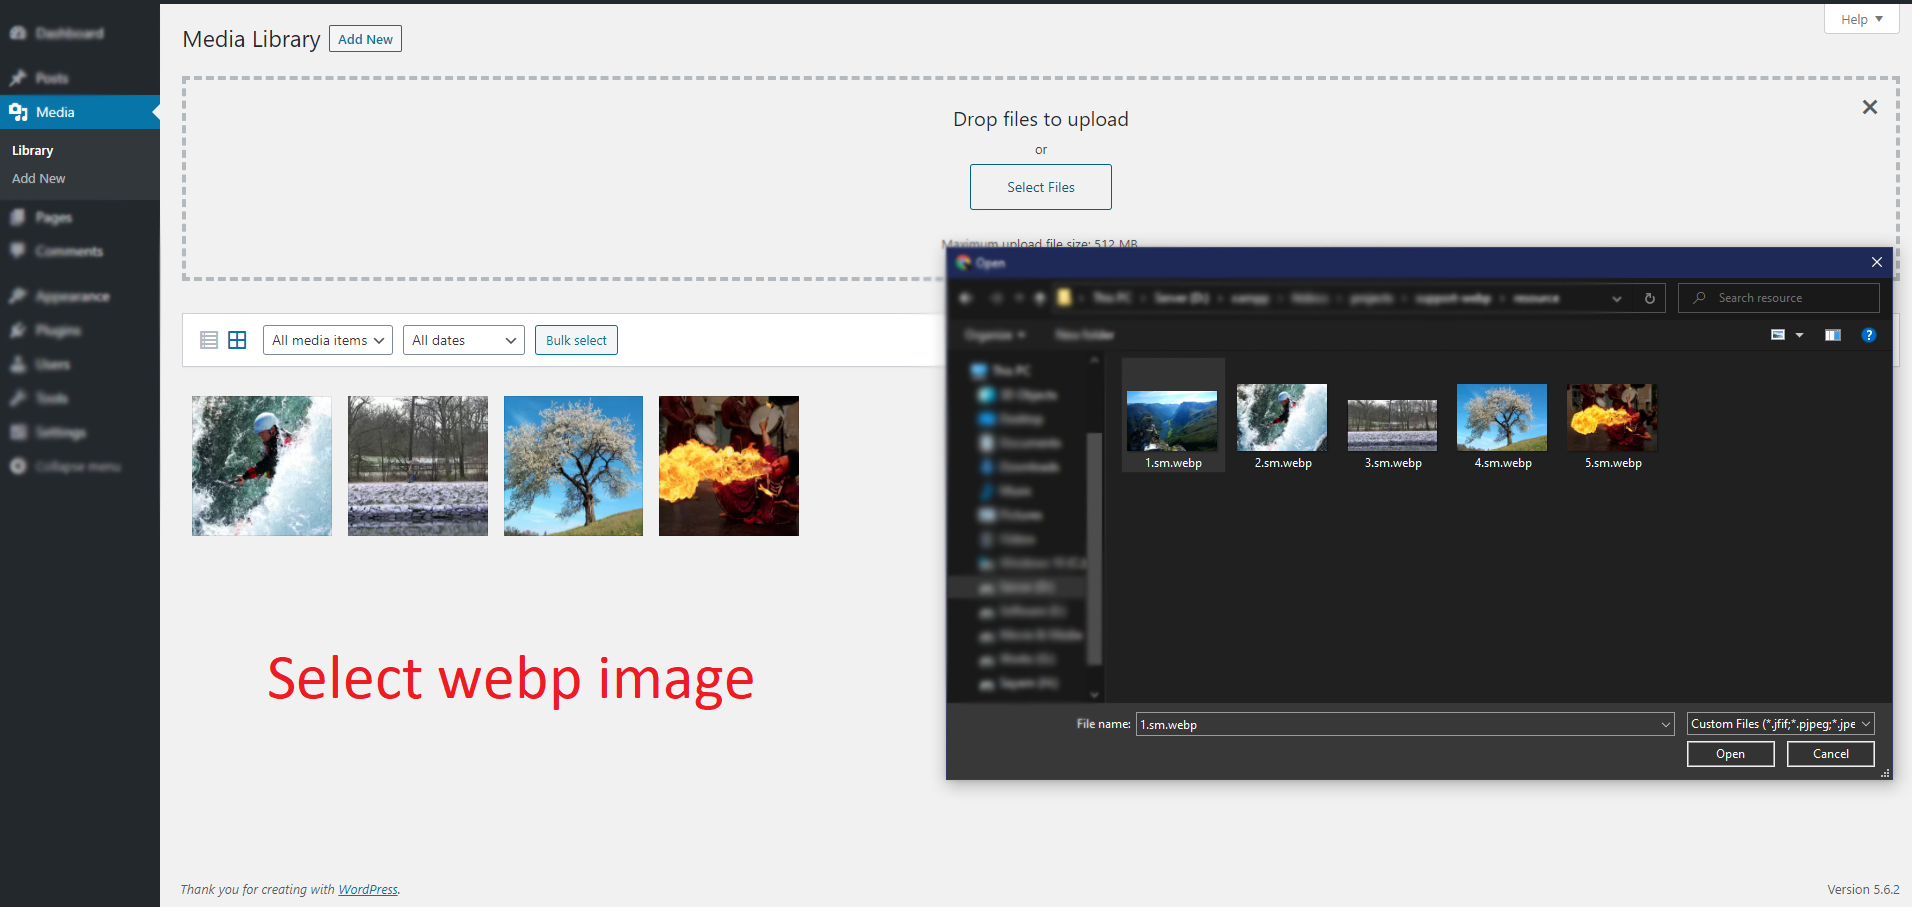 Select webp image during upload.